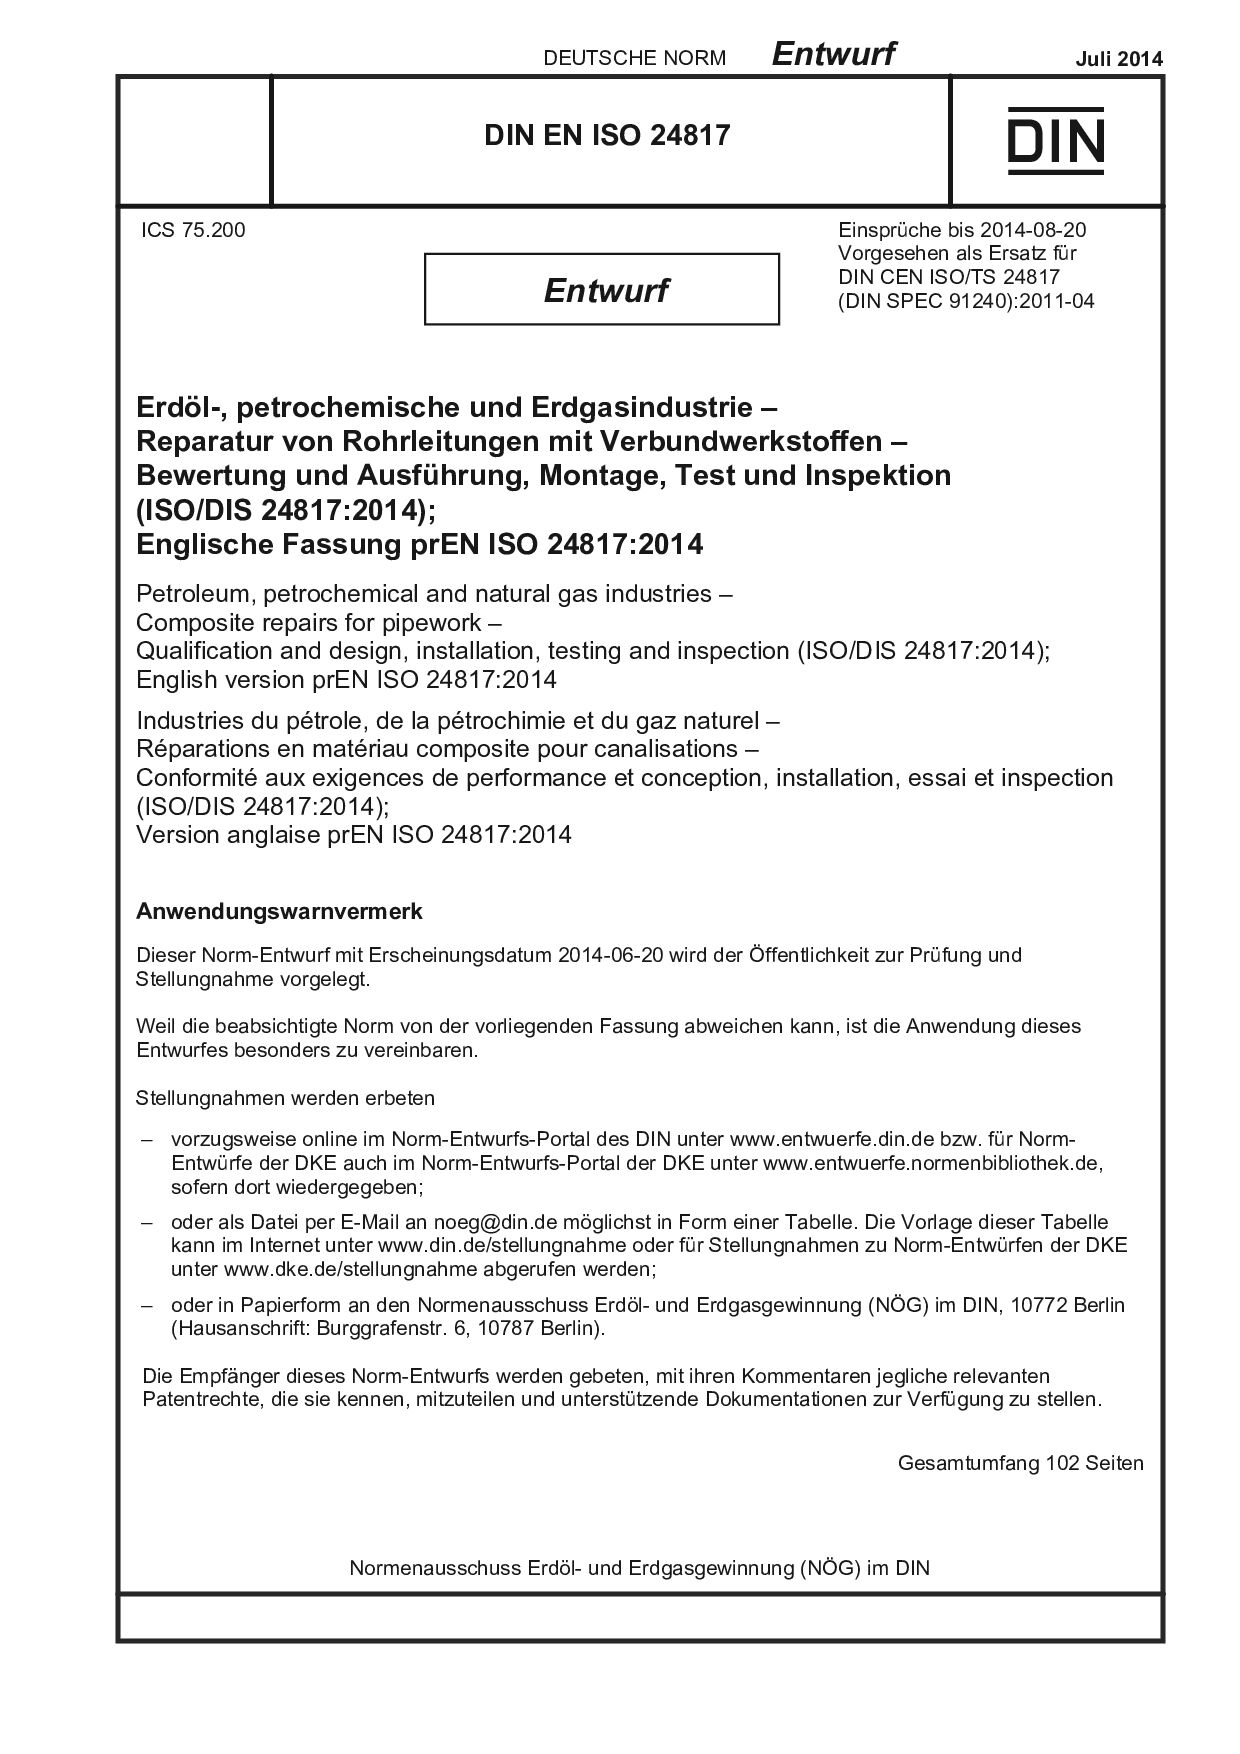 DIN EN ISO 24817 E:2014-07封面图